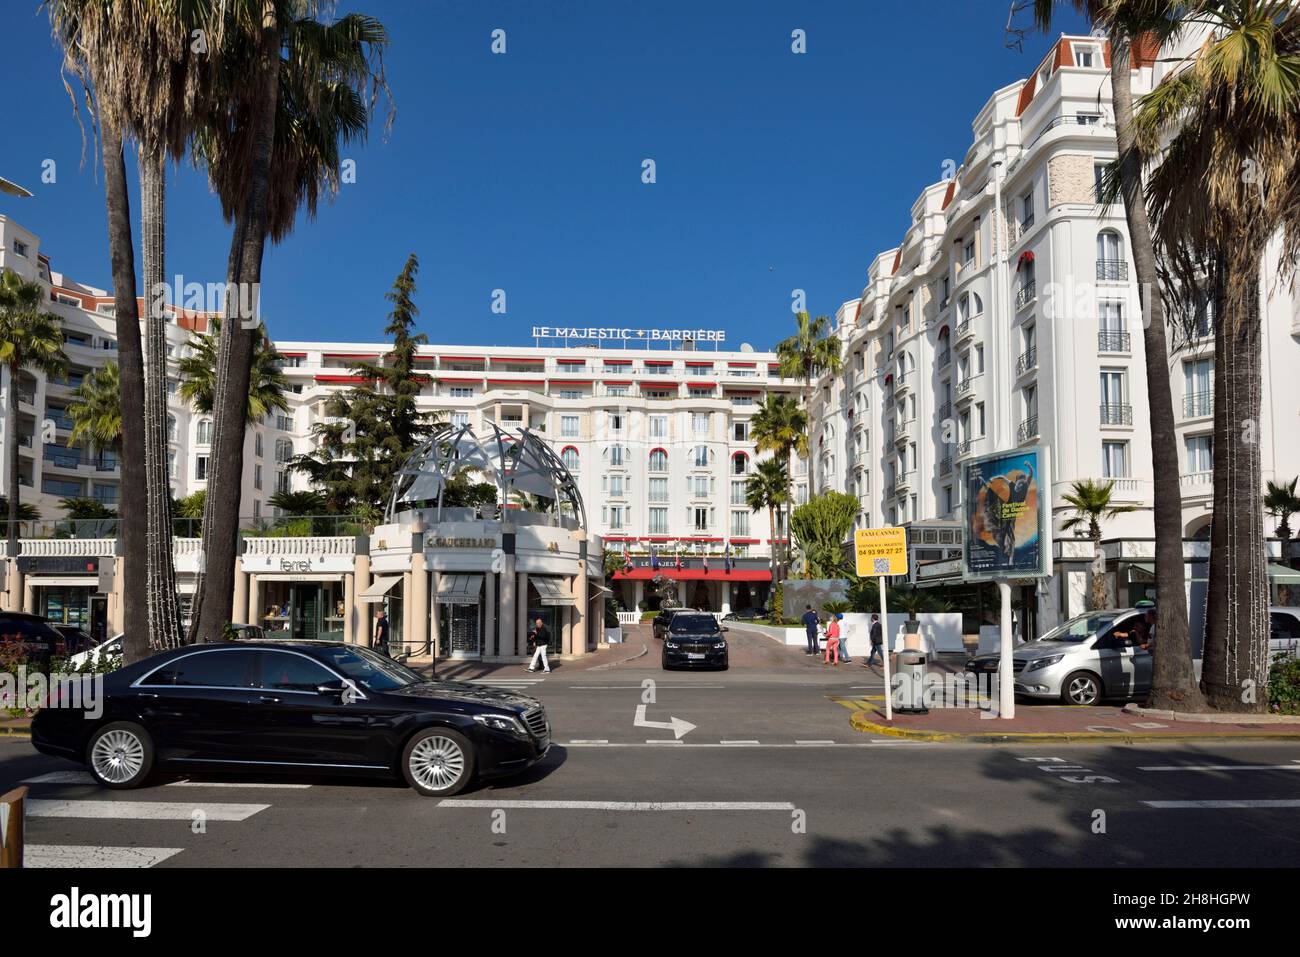 Francia, Alpes Marítimos, Cannes, La Croisette, un largo paseo marítimo con palmeras y pinos y el Majestic Barrière Hotel Foto de stock